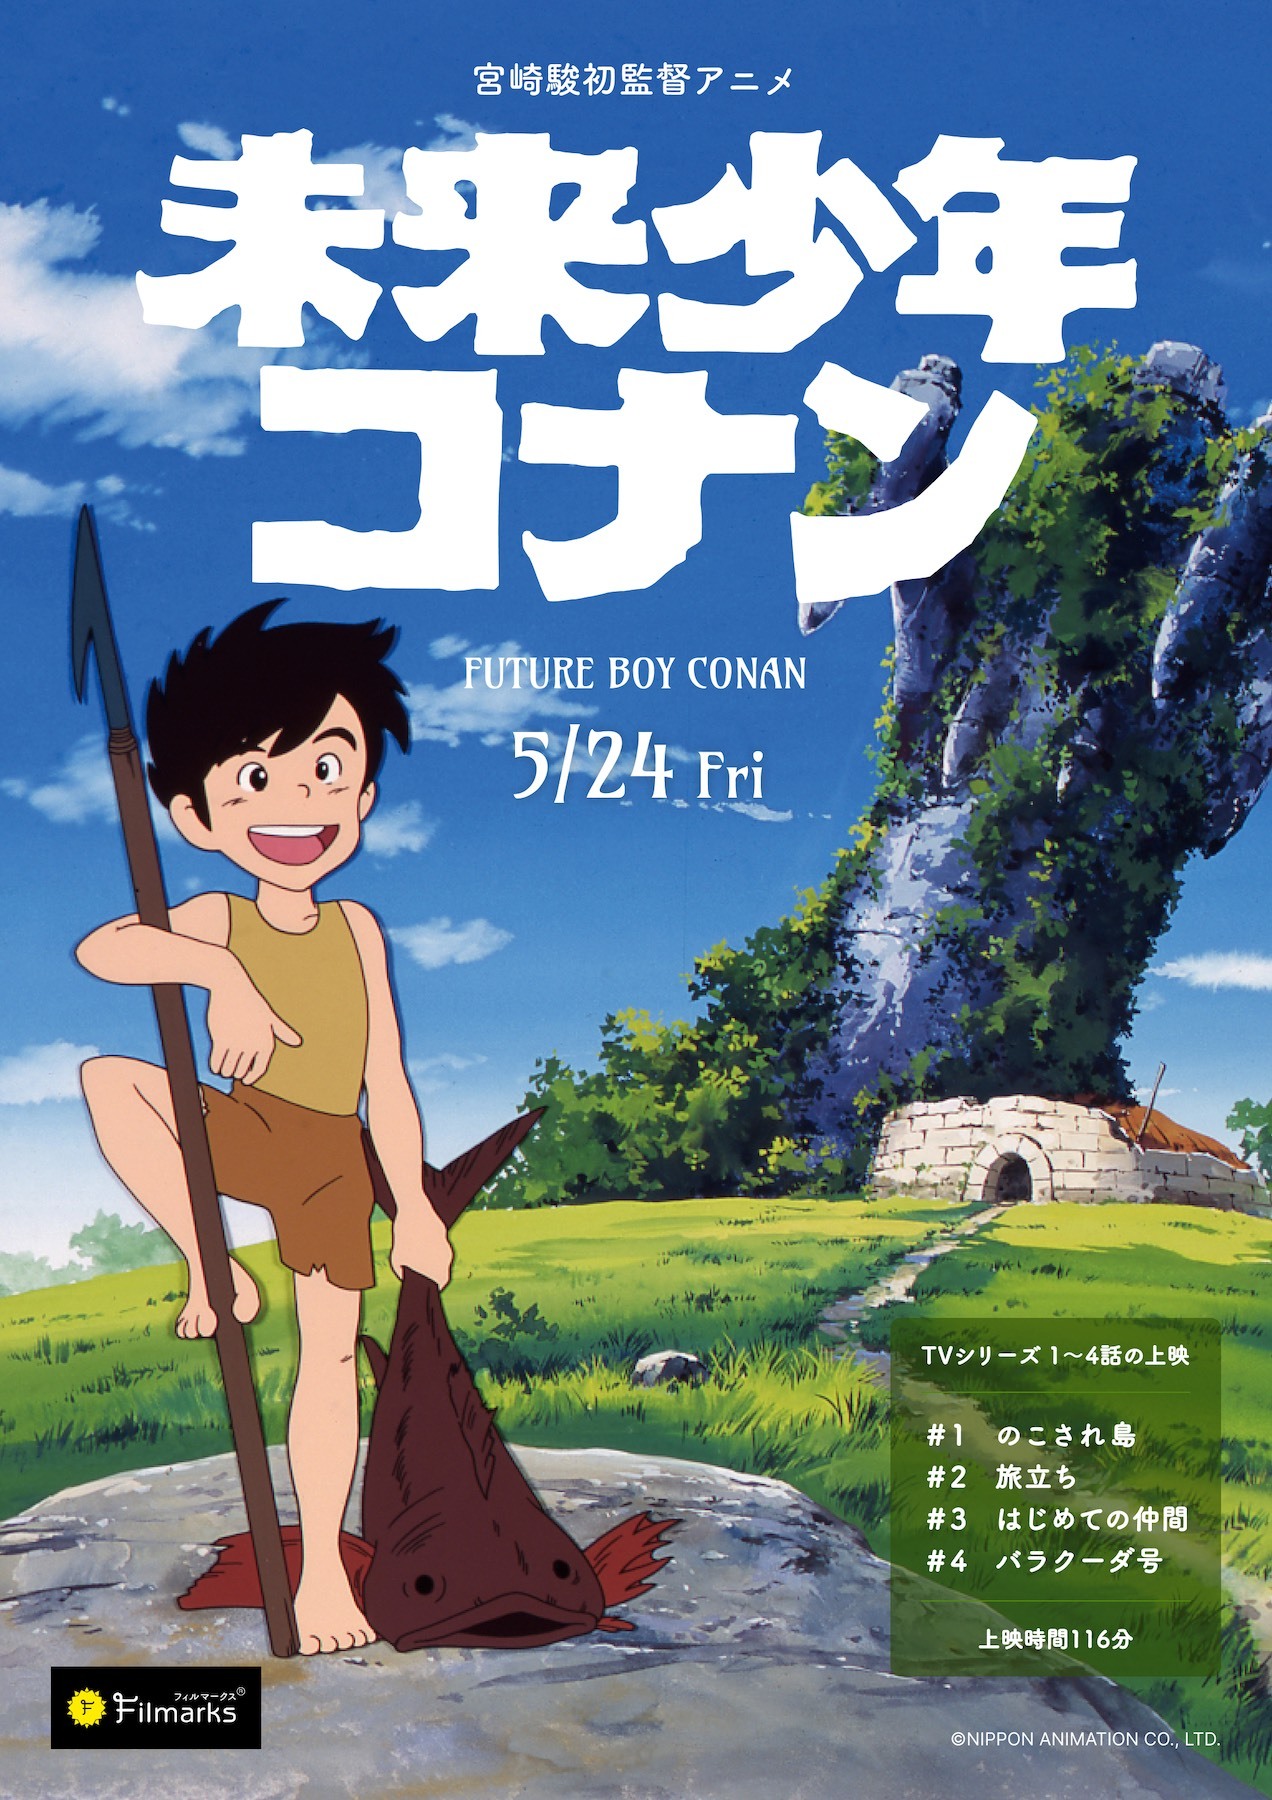 宮﨑駿演出テレビアニメ『未来少年コナン』が5月24日より1週間限定上映 